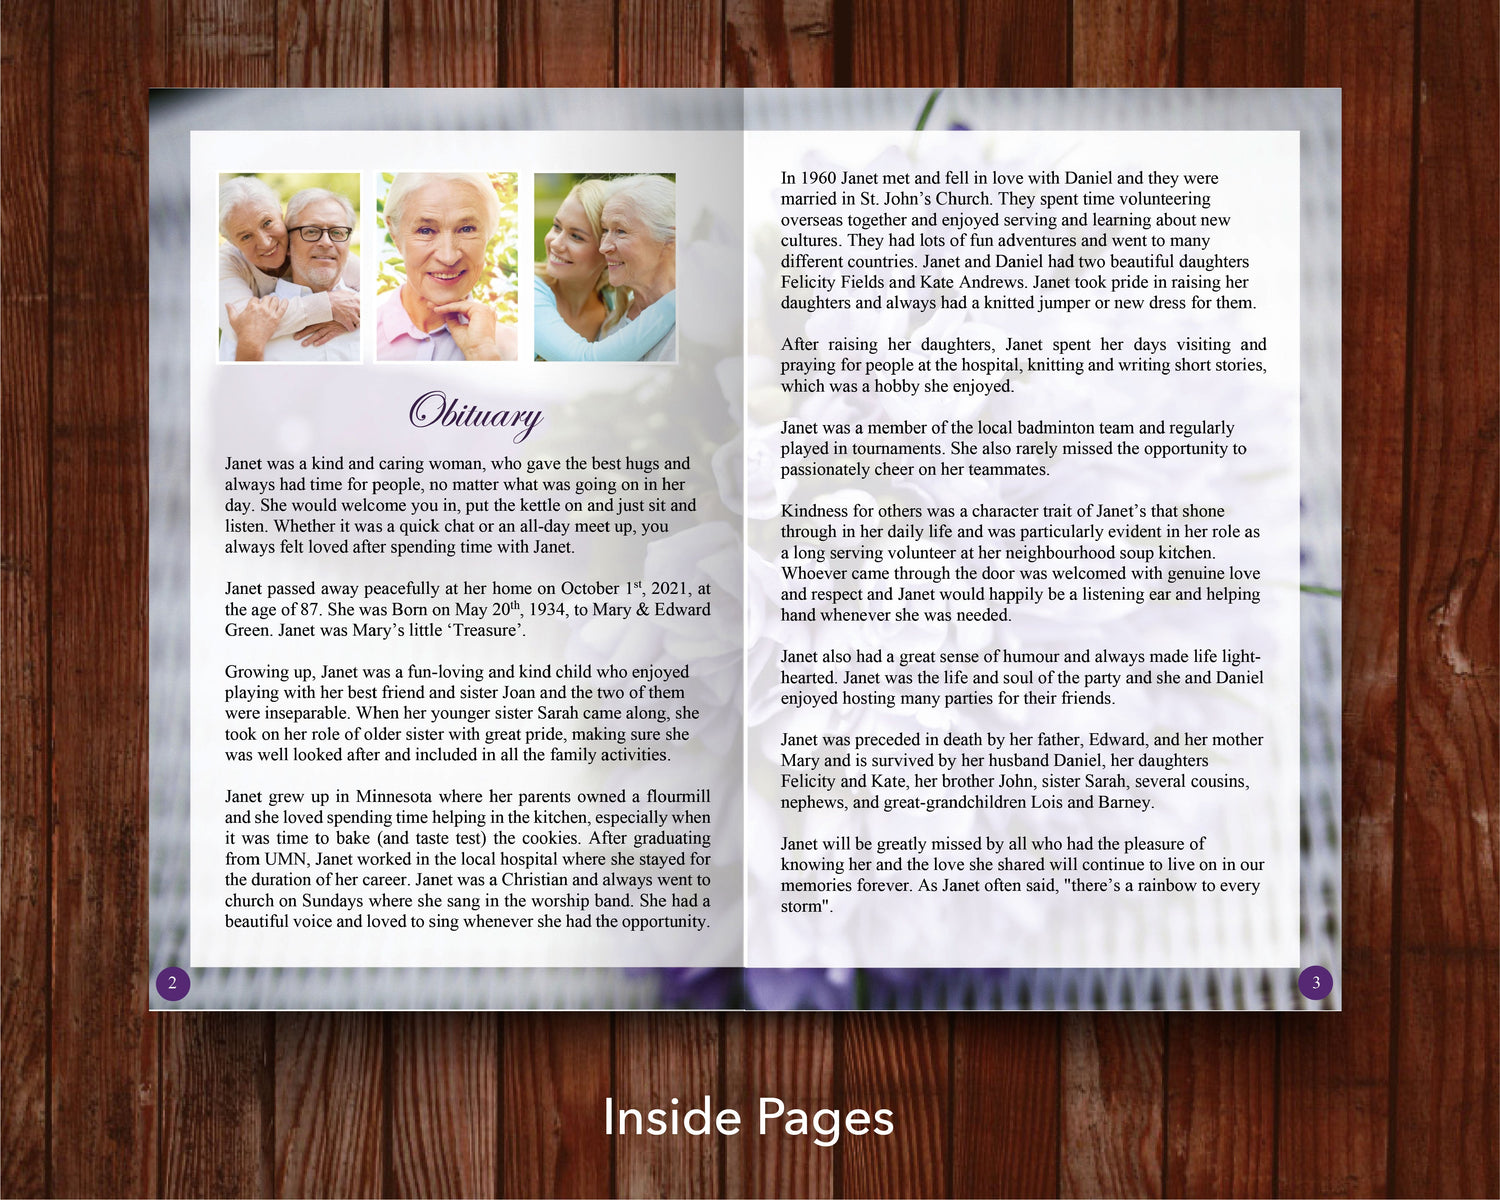 12 Page Purple Bouquet Funeral Program Template